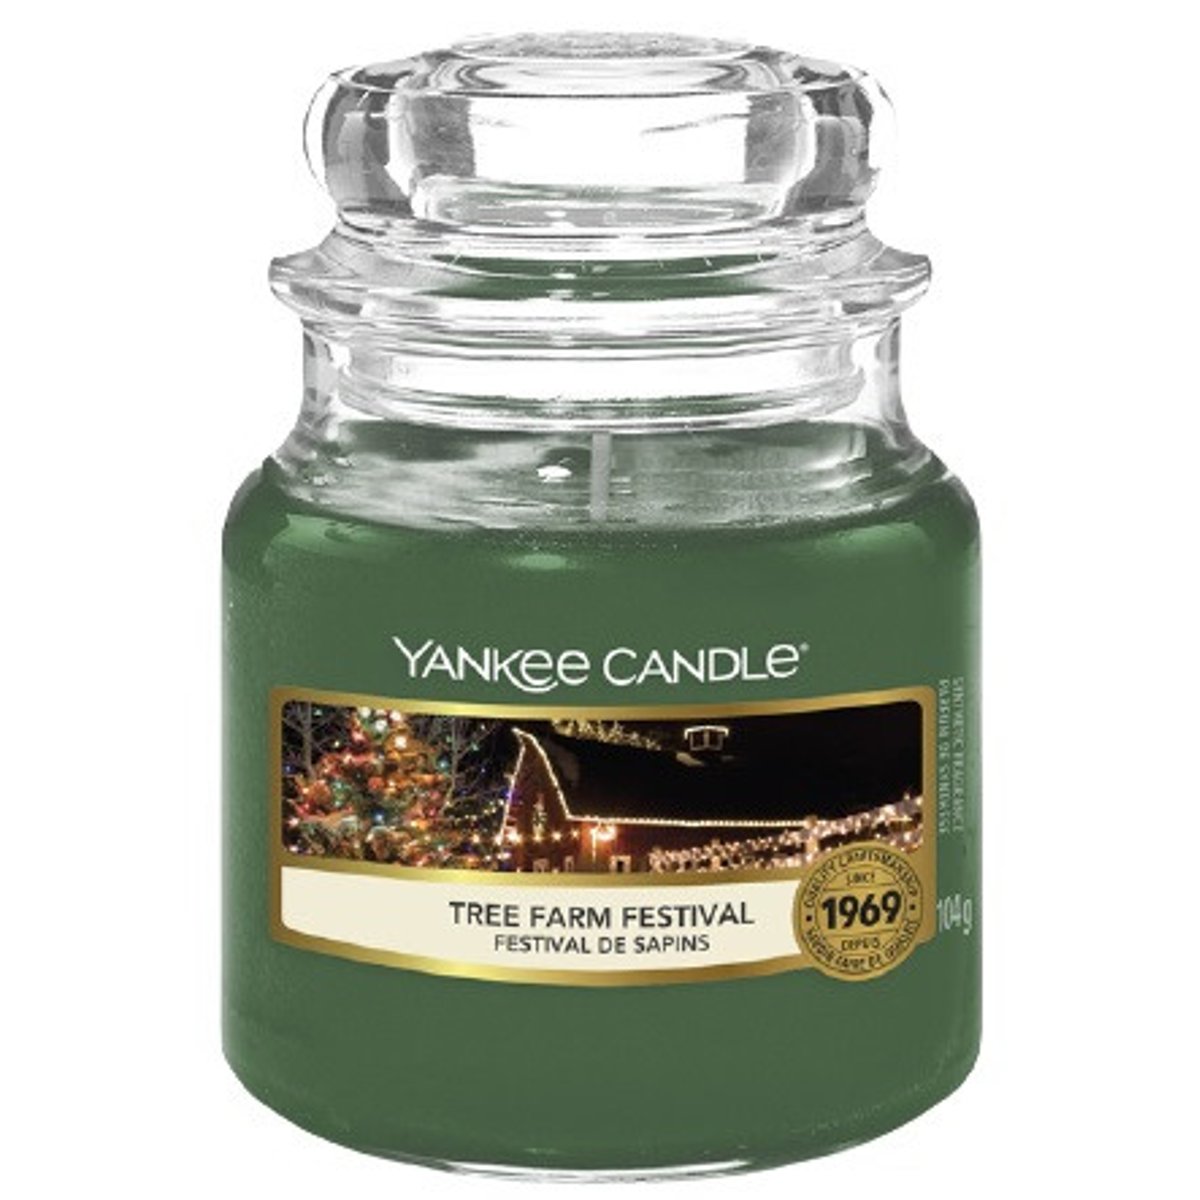 Yankee Candle Classic Tree Farm Festival malá vonná svíčka